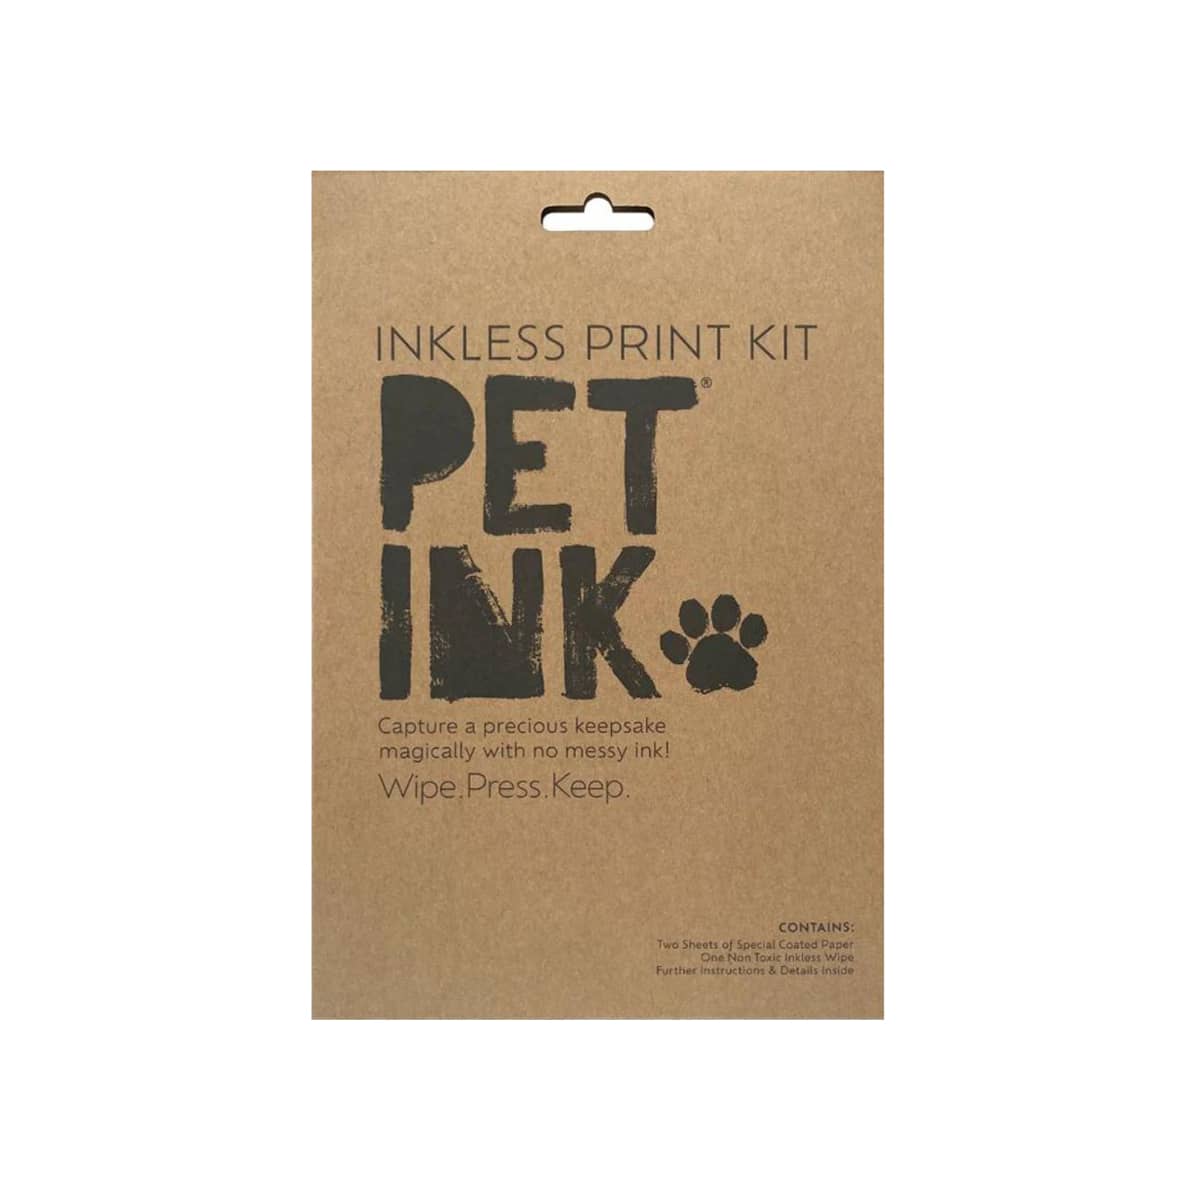 Baby Ink Inkless Print Kit - Pet